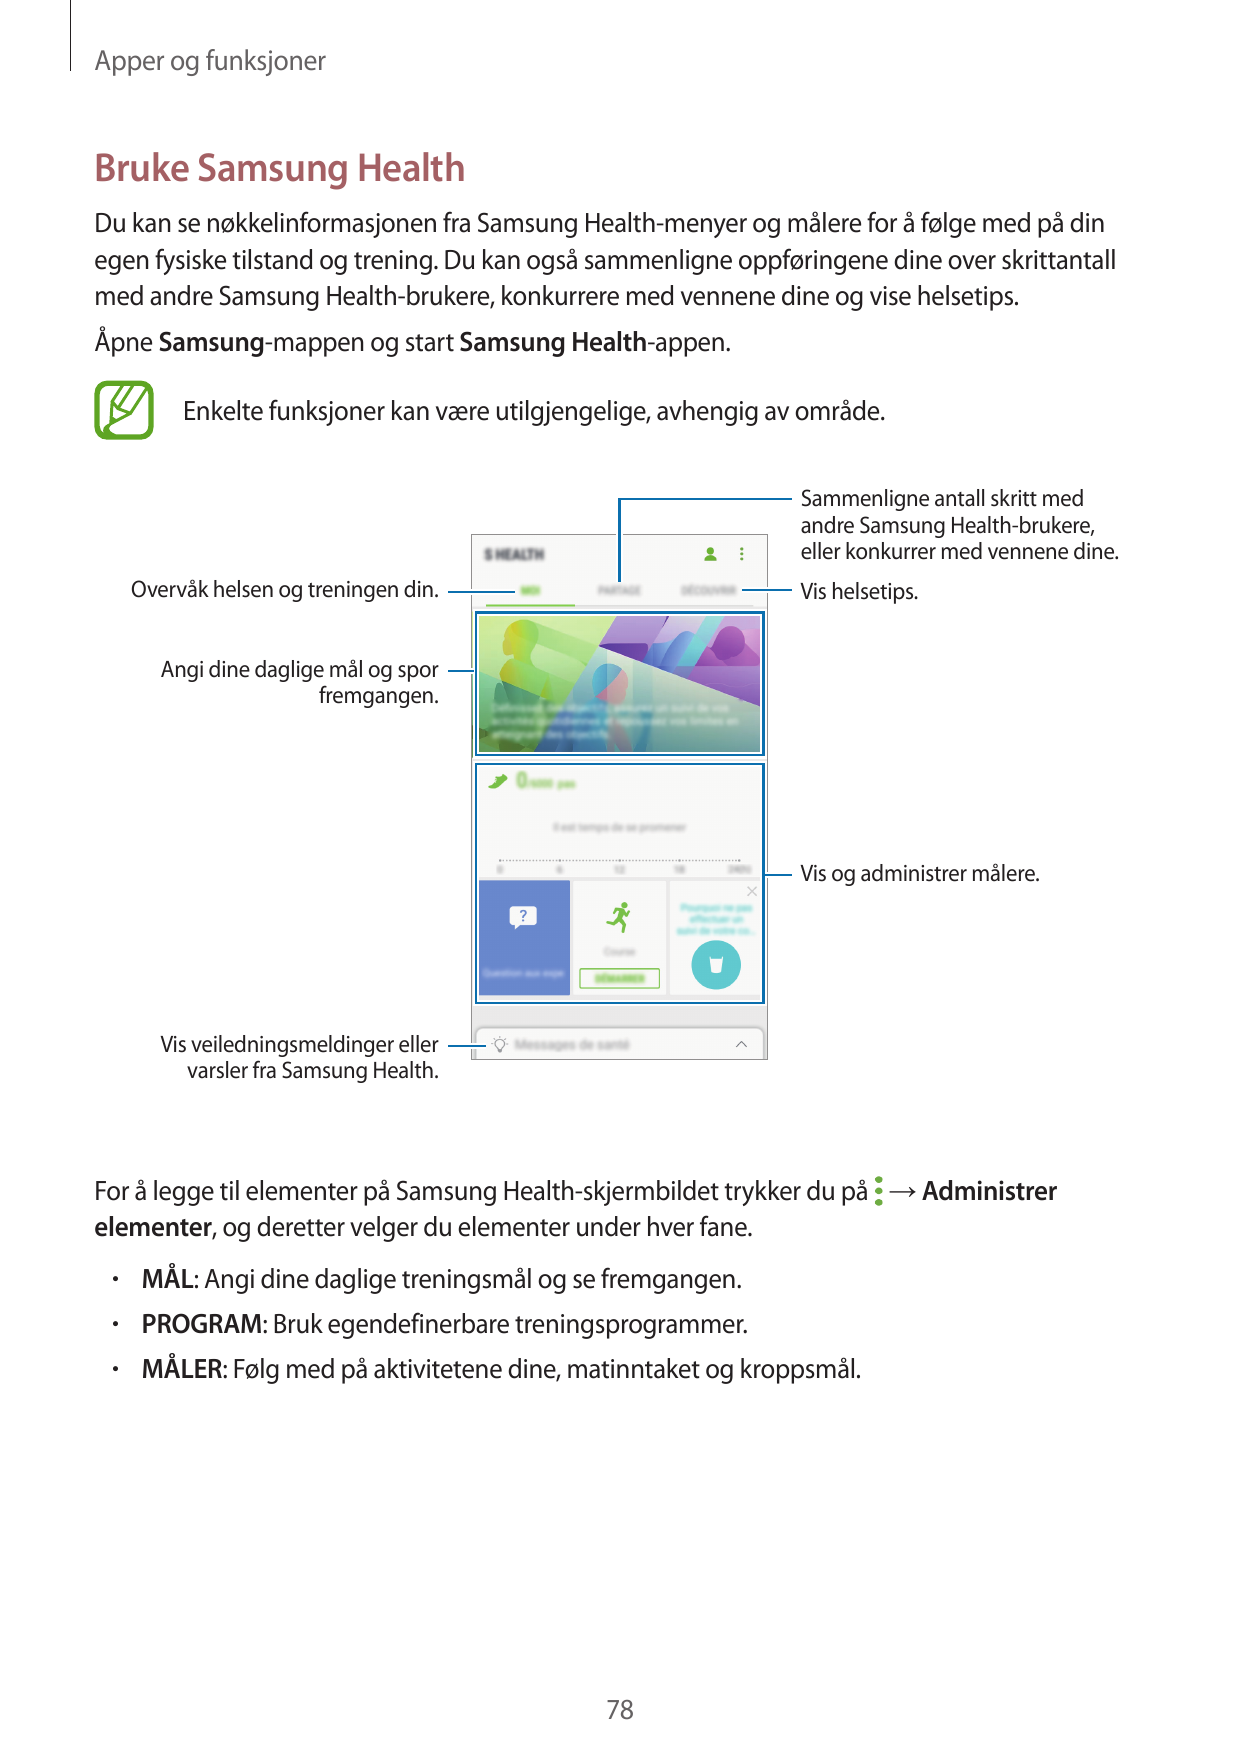 Apper og funksjonerBruke Samsung HealthDu kan se nøkkelinformasjonen fra Samsung Health-menyer og målere for å følge med på dine